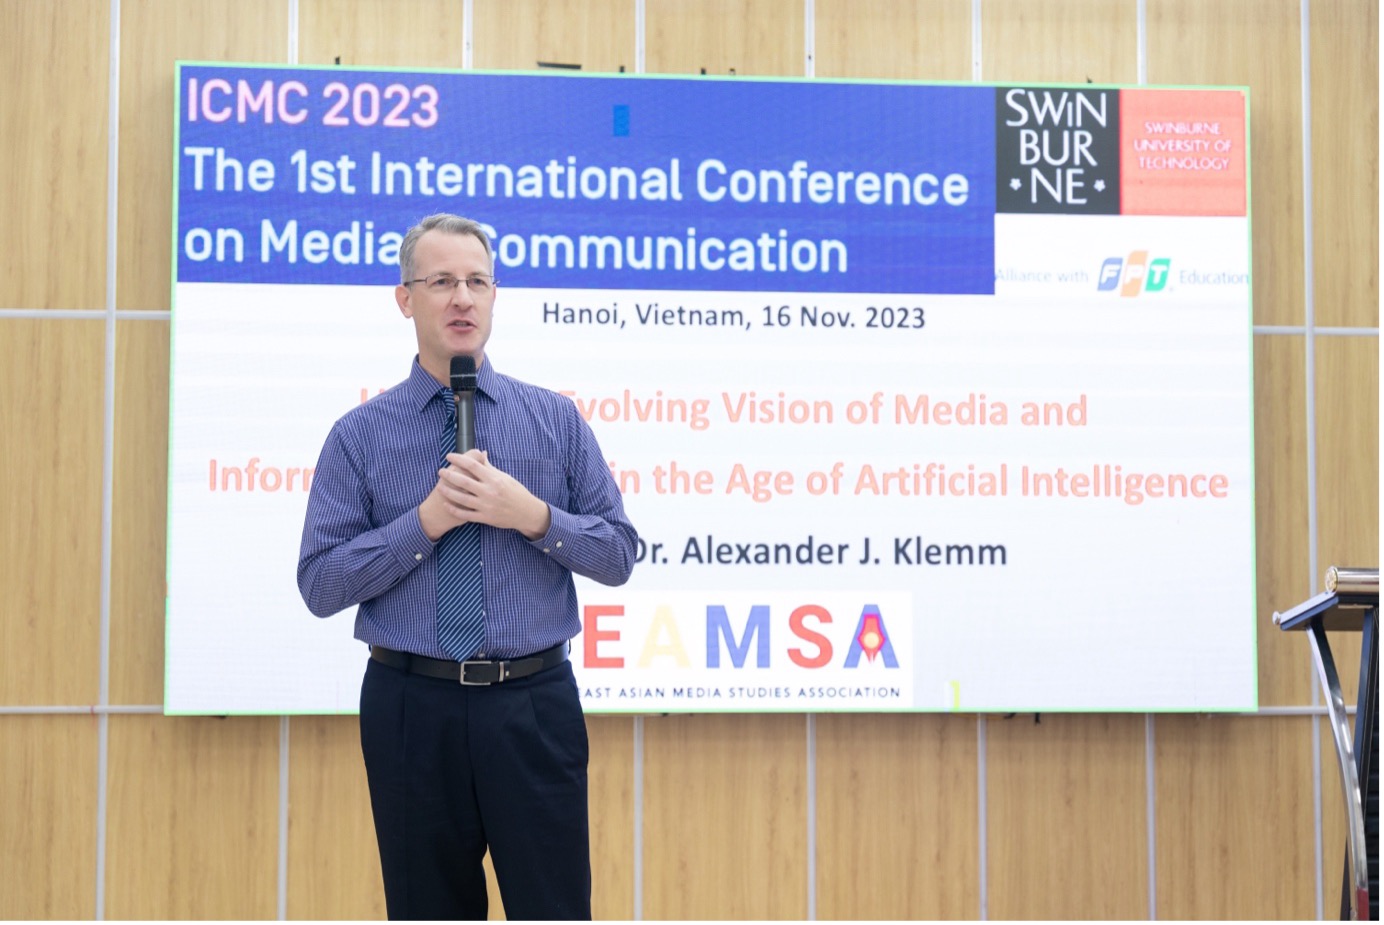 Tiến sĩ Alexander J. Klemm - Giám đốc điều hành Hiệp hội Nghiên cứu Truyền thông Đông Nam Á (SEAMSA) chia sẻ tại hội thảo.